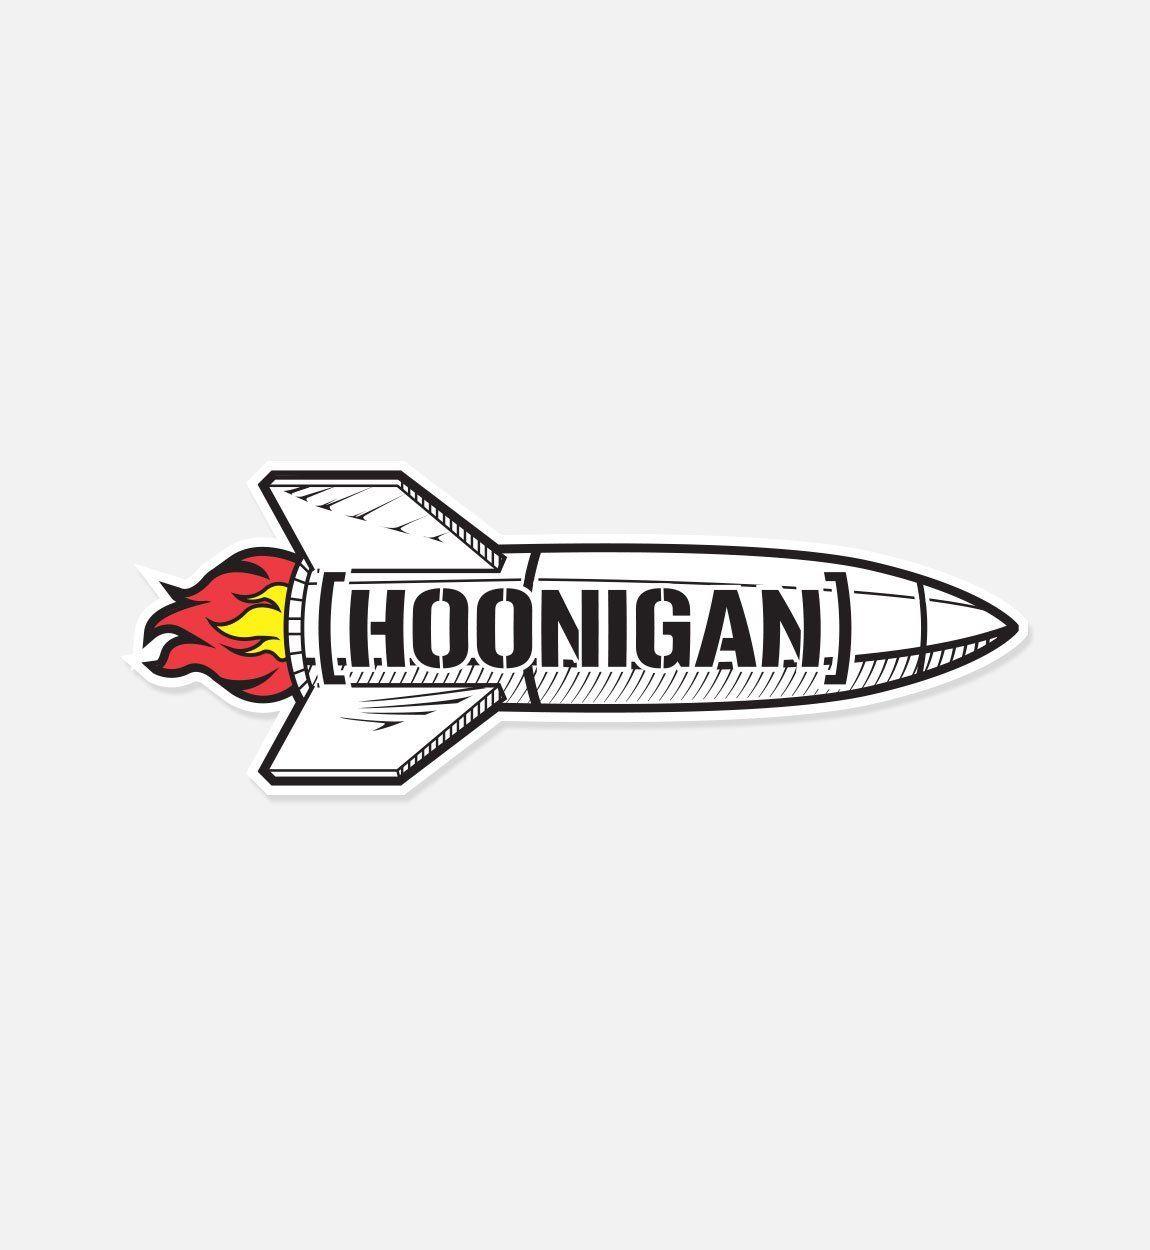 Bracket Logo - Hoonigan Rocket with Bracket Logo Premium Vinyl Sticker Die Cut